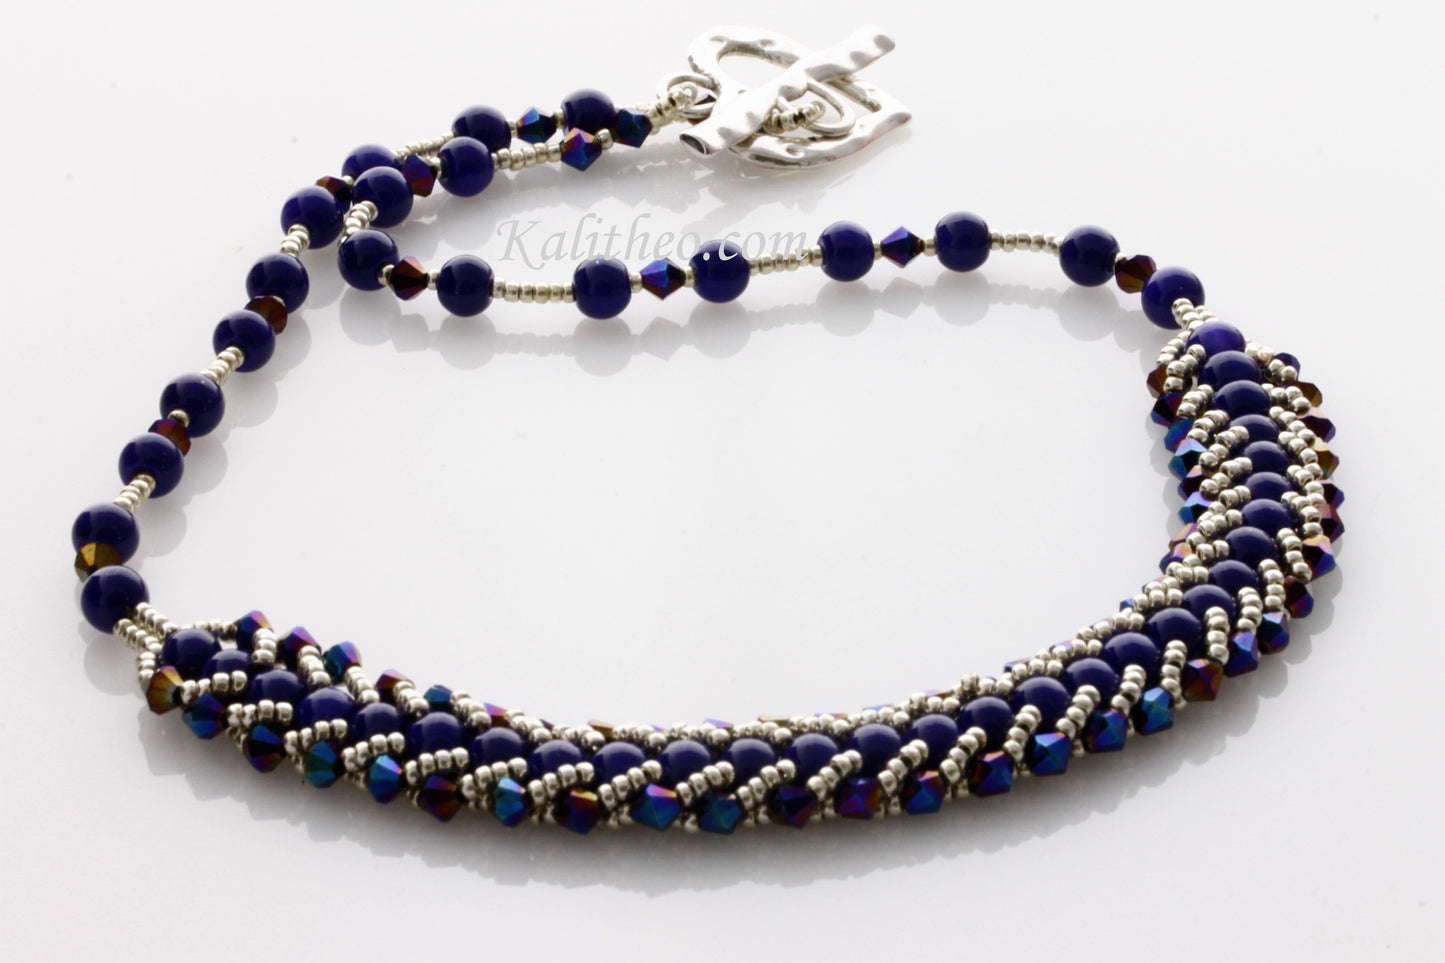 KTC-261 "Omorfia Blue" Necklace - Kalitheo Jewellery